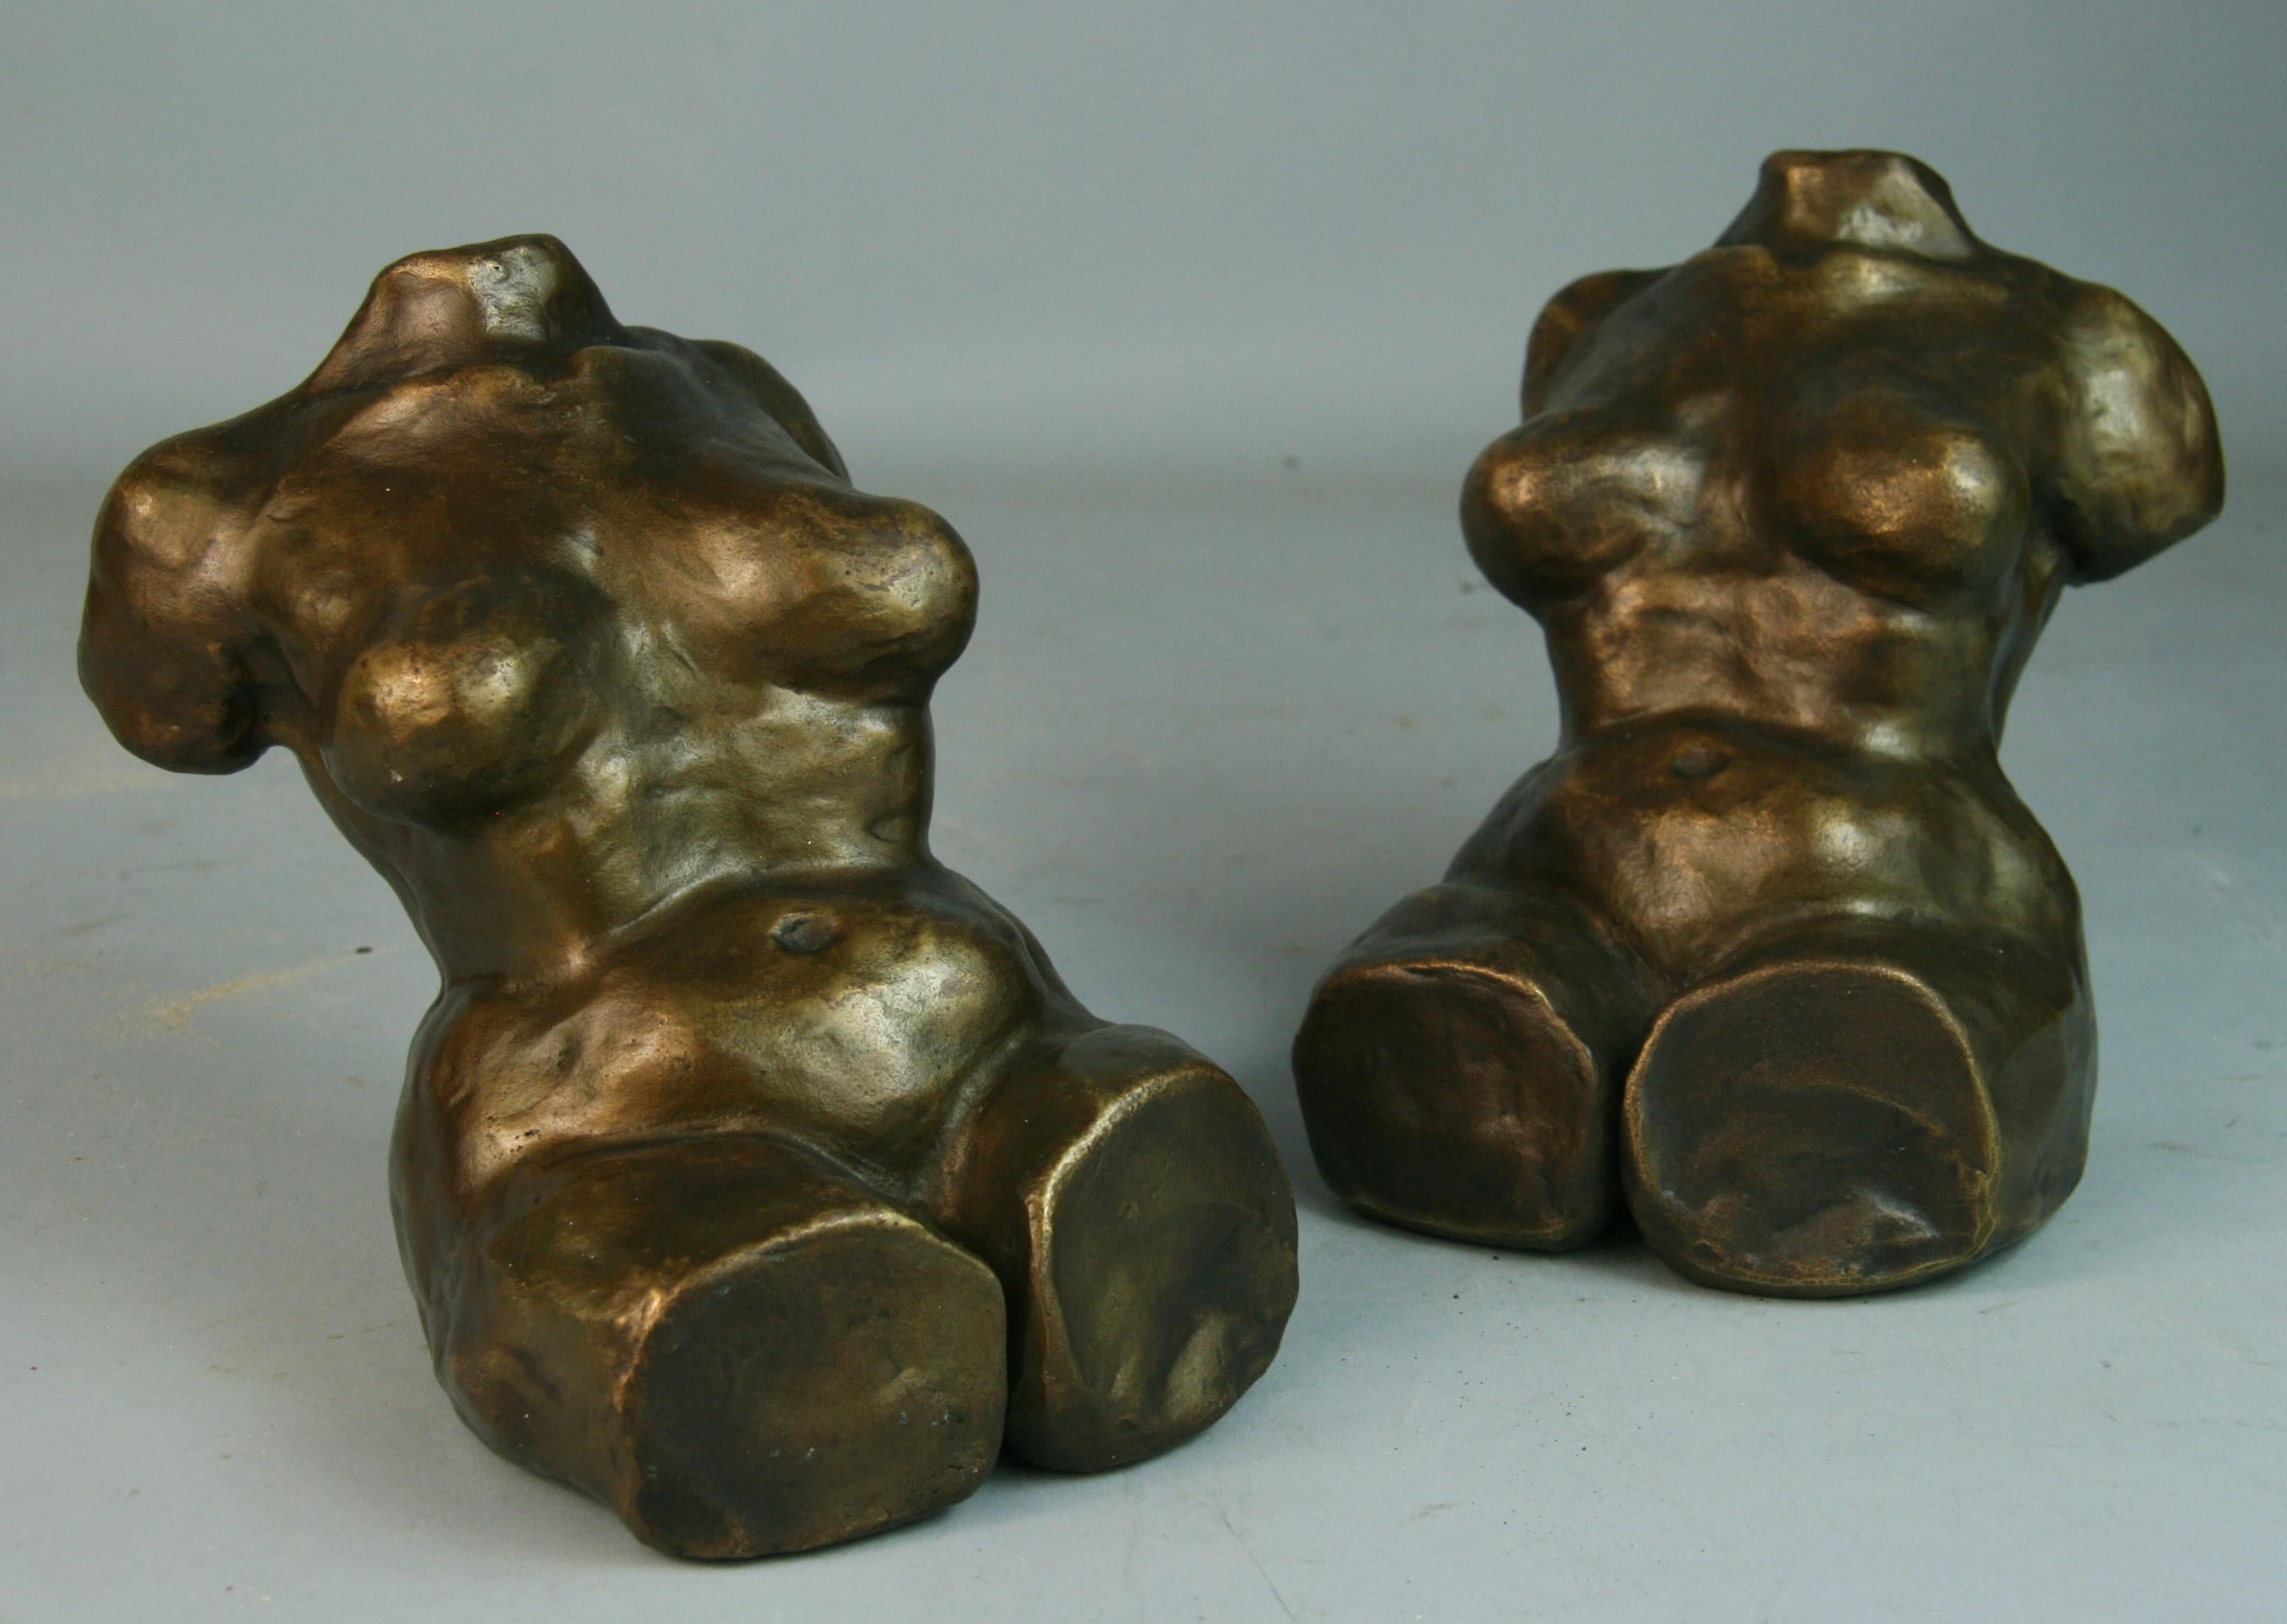 3-720 sculptures de nus en bronze lourd/ serre-livres
Paraphe sur le bas de la CR.